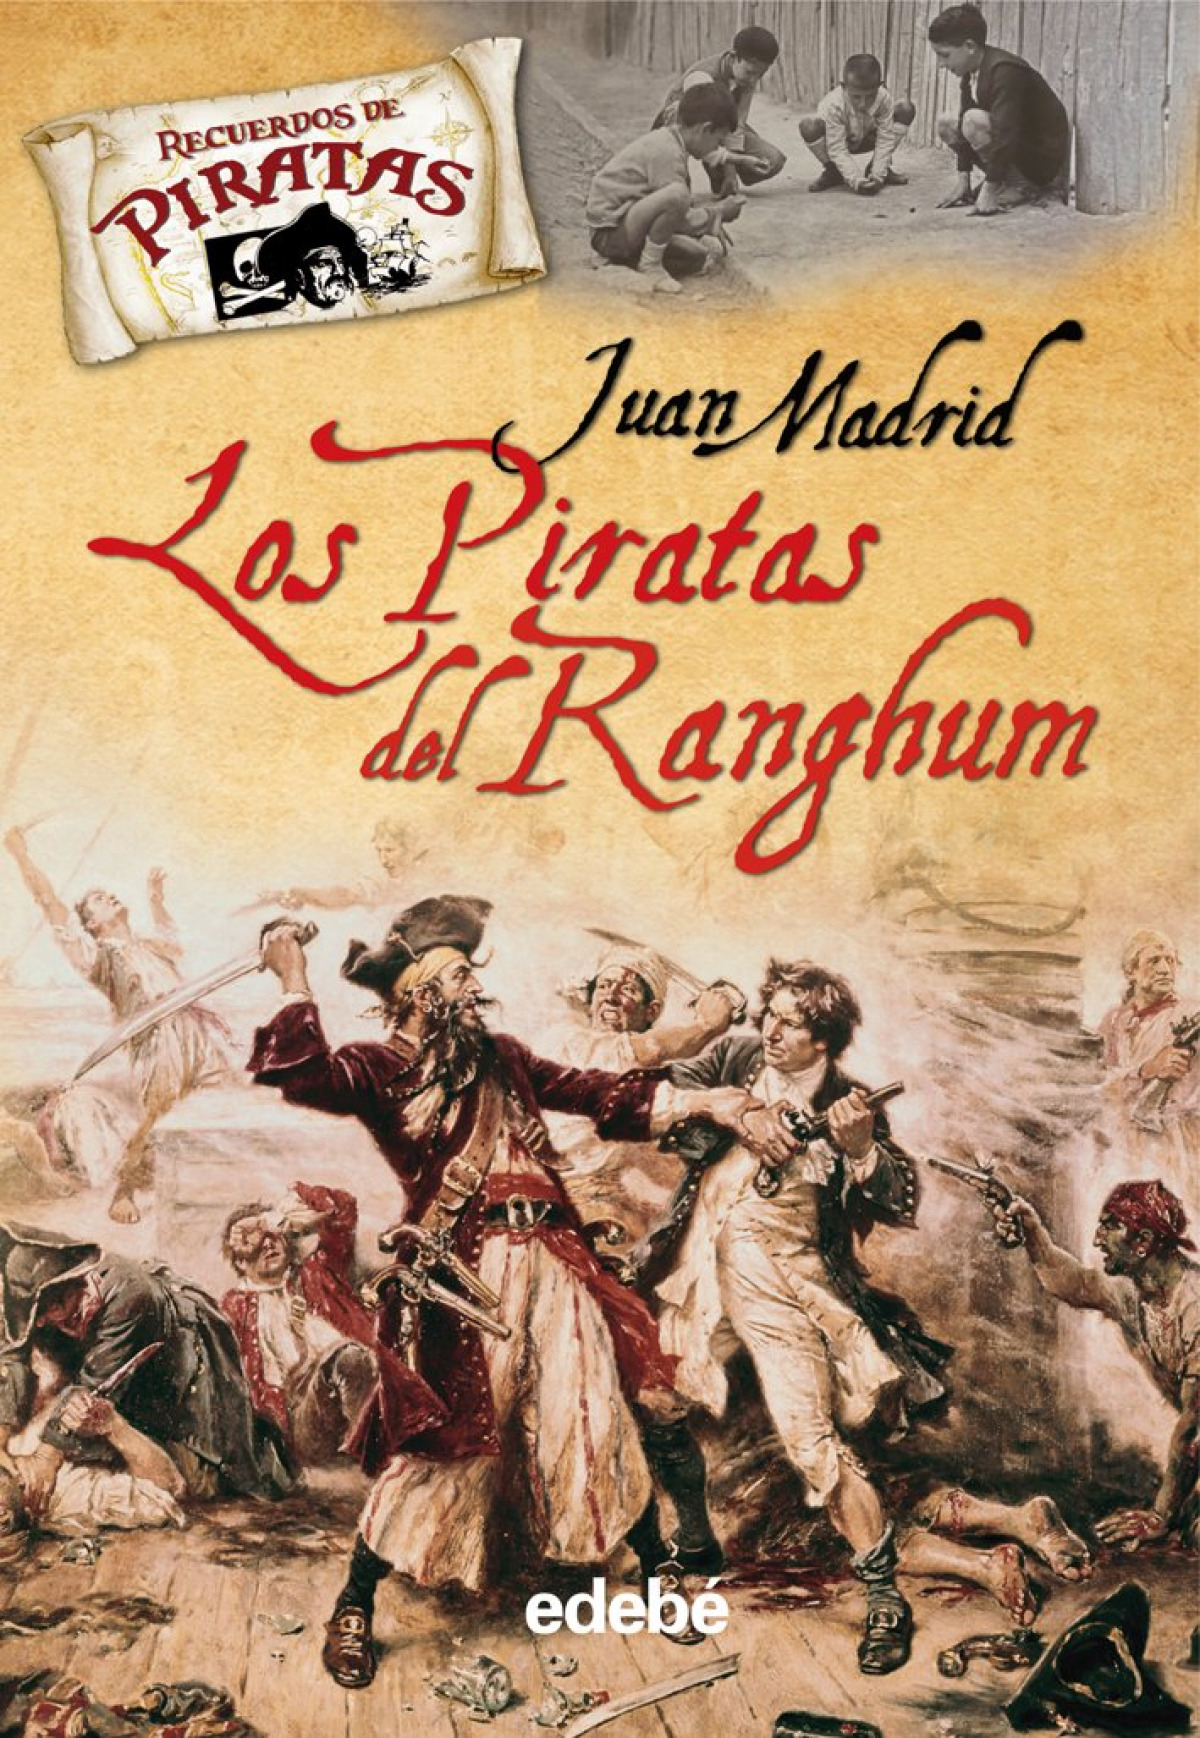 Los piratas del ranghum - Juan Madrid Muñoz